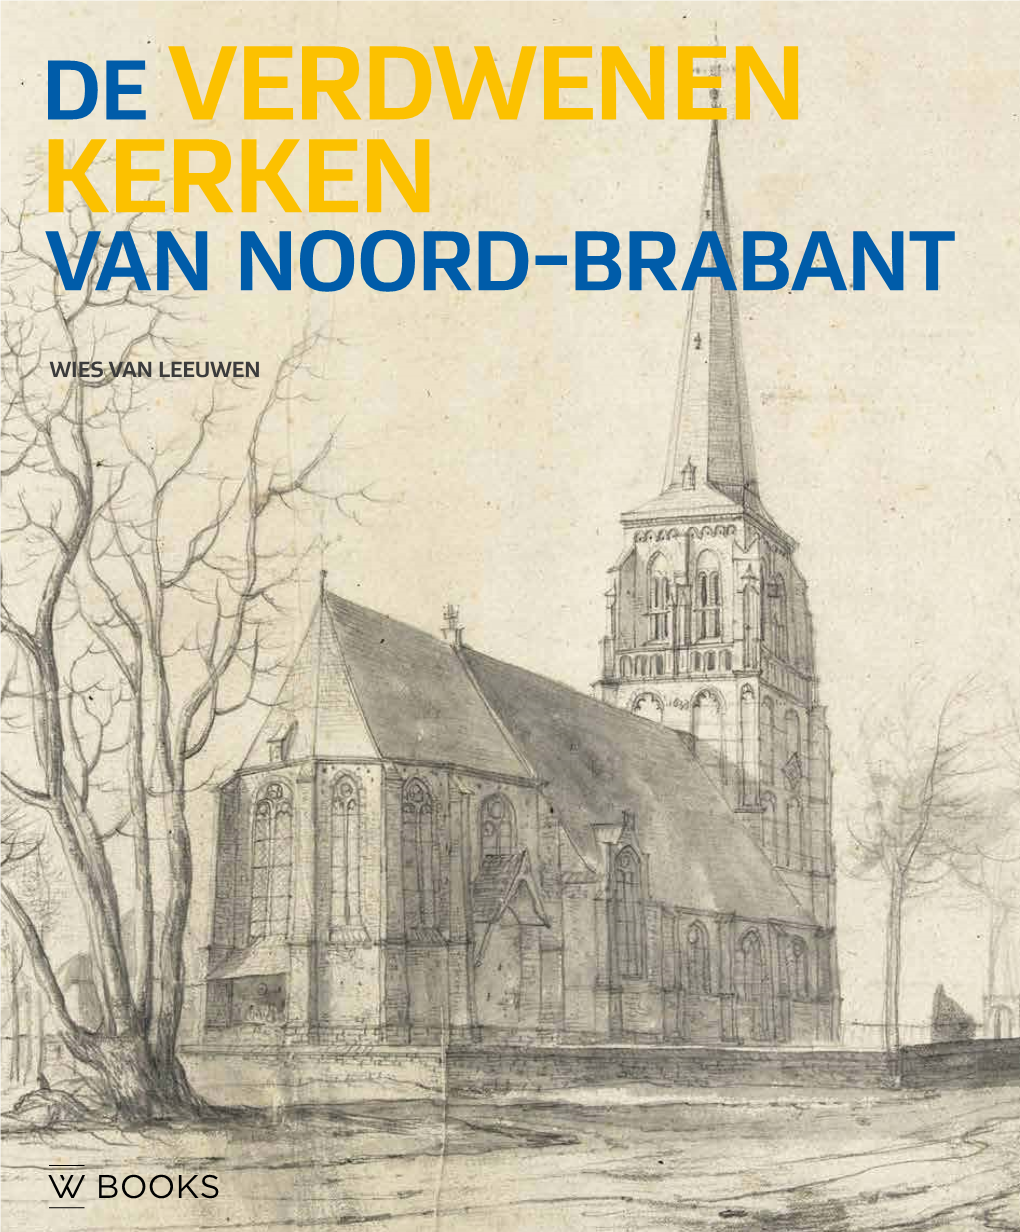 Van Noord-Brabant